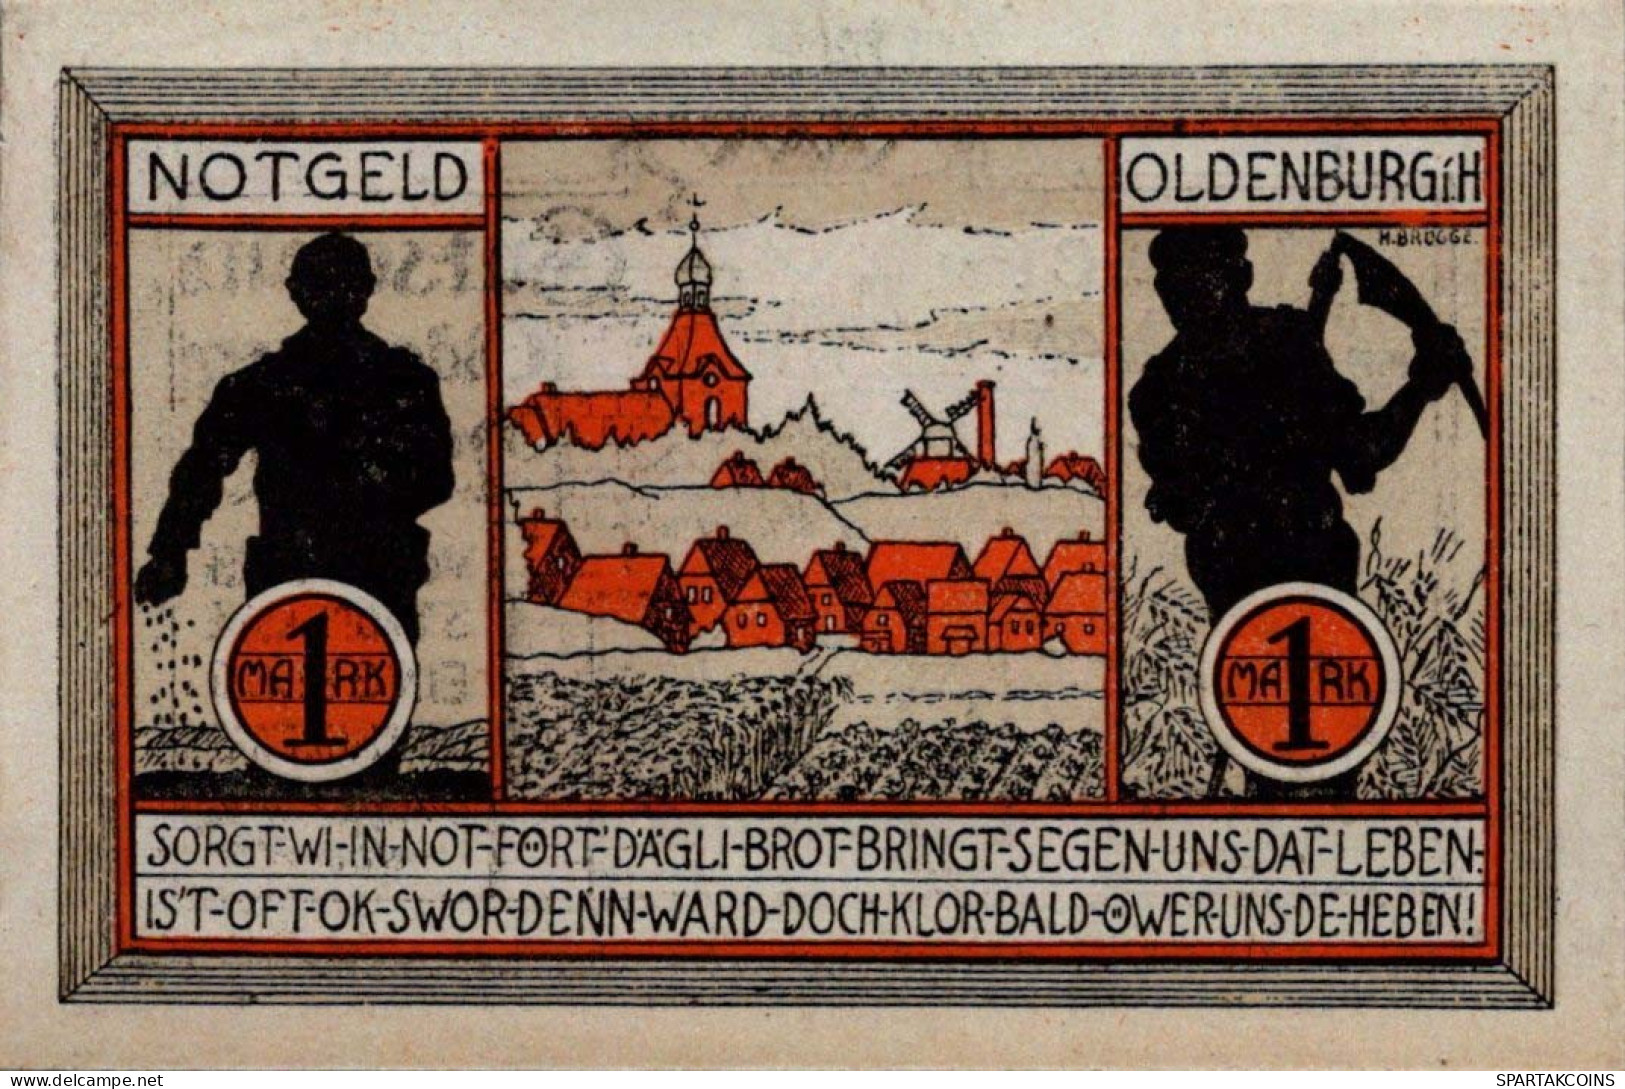 1 MARK 1922 Stadt OLDENBURG IN HOLSTEIN Schleswig-Holstein UNC DEUTSCHLAND #PI843 - [11] Local Banknote Issues